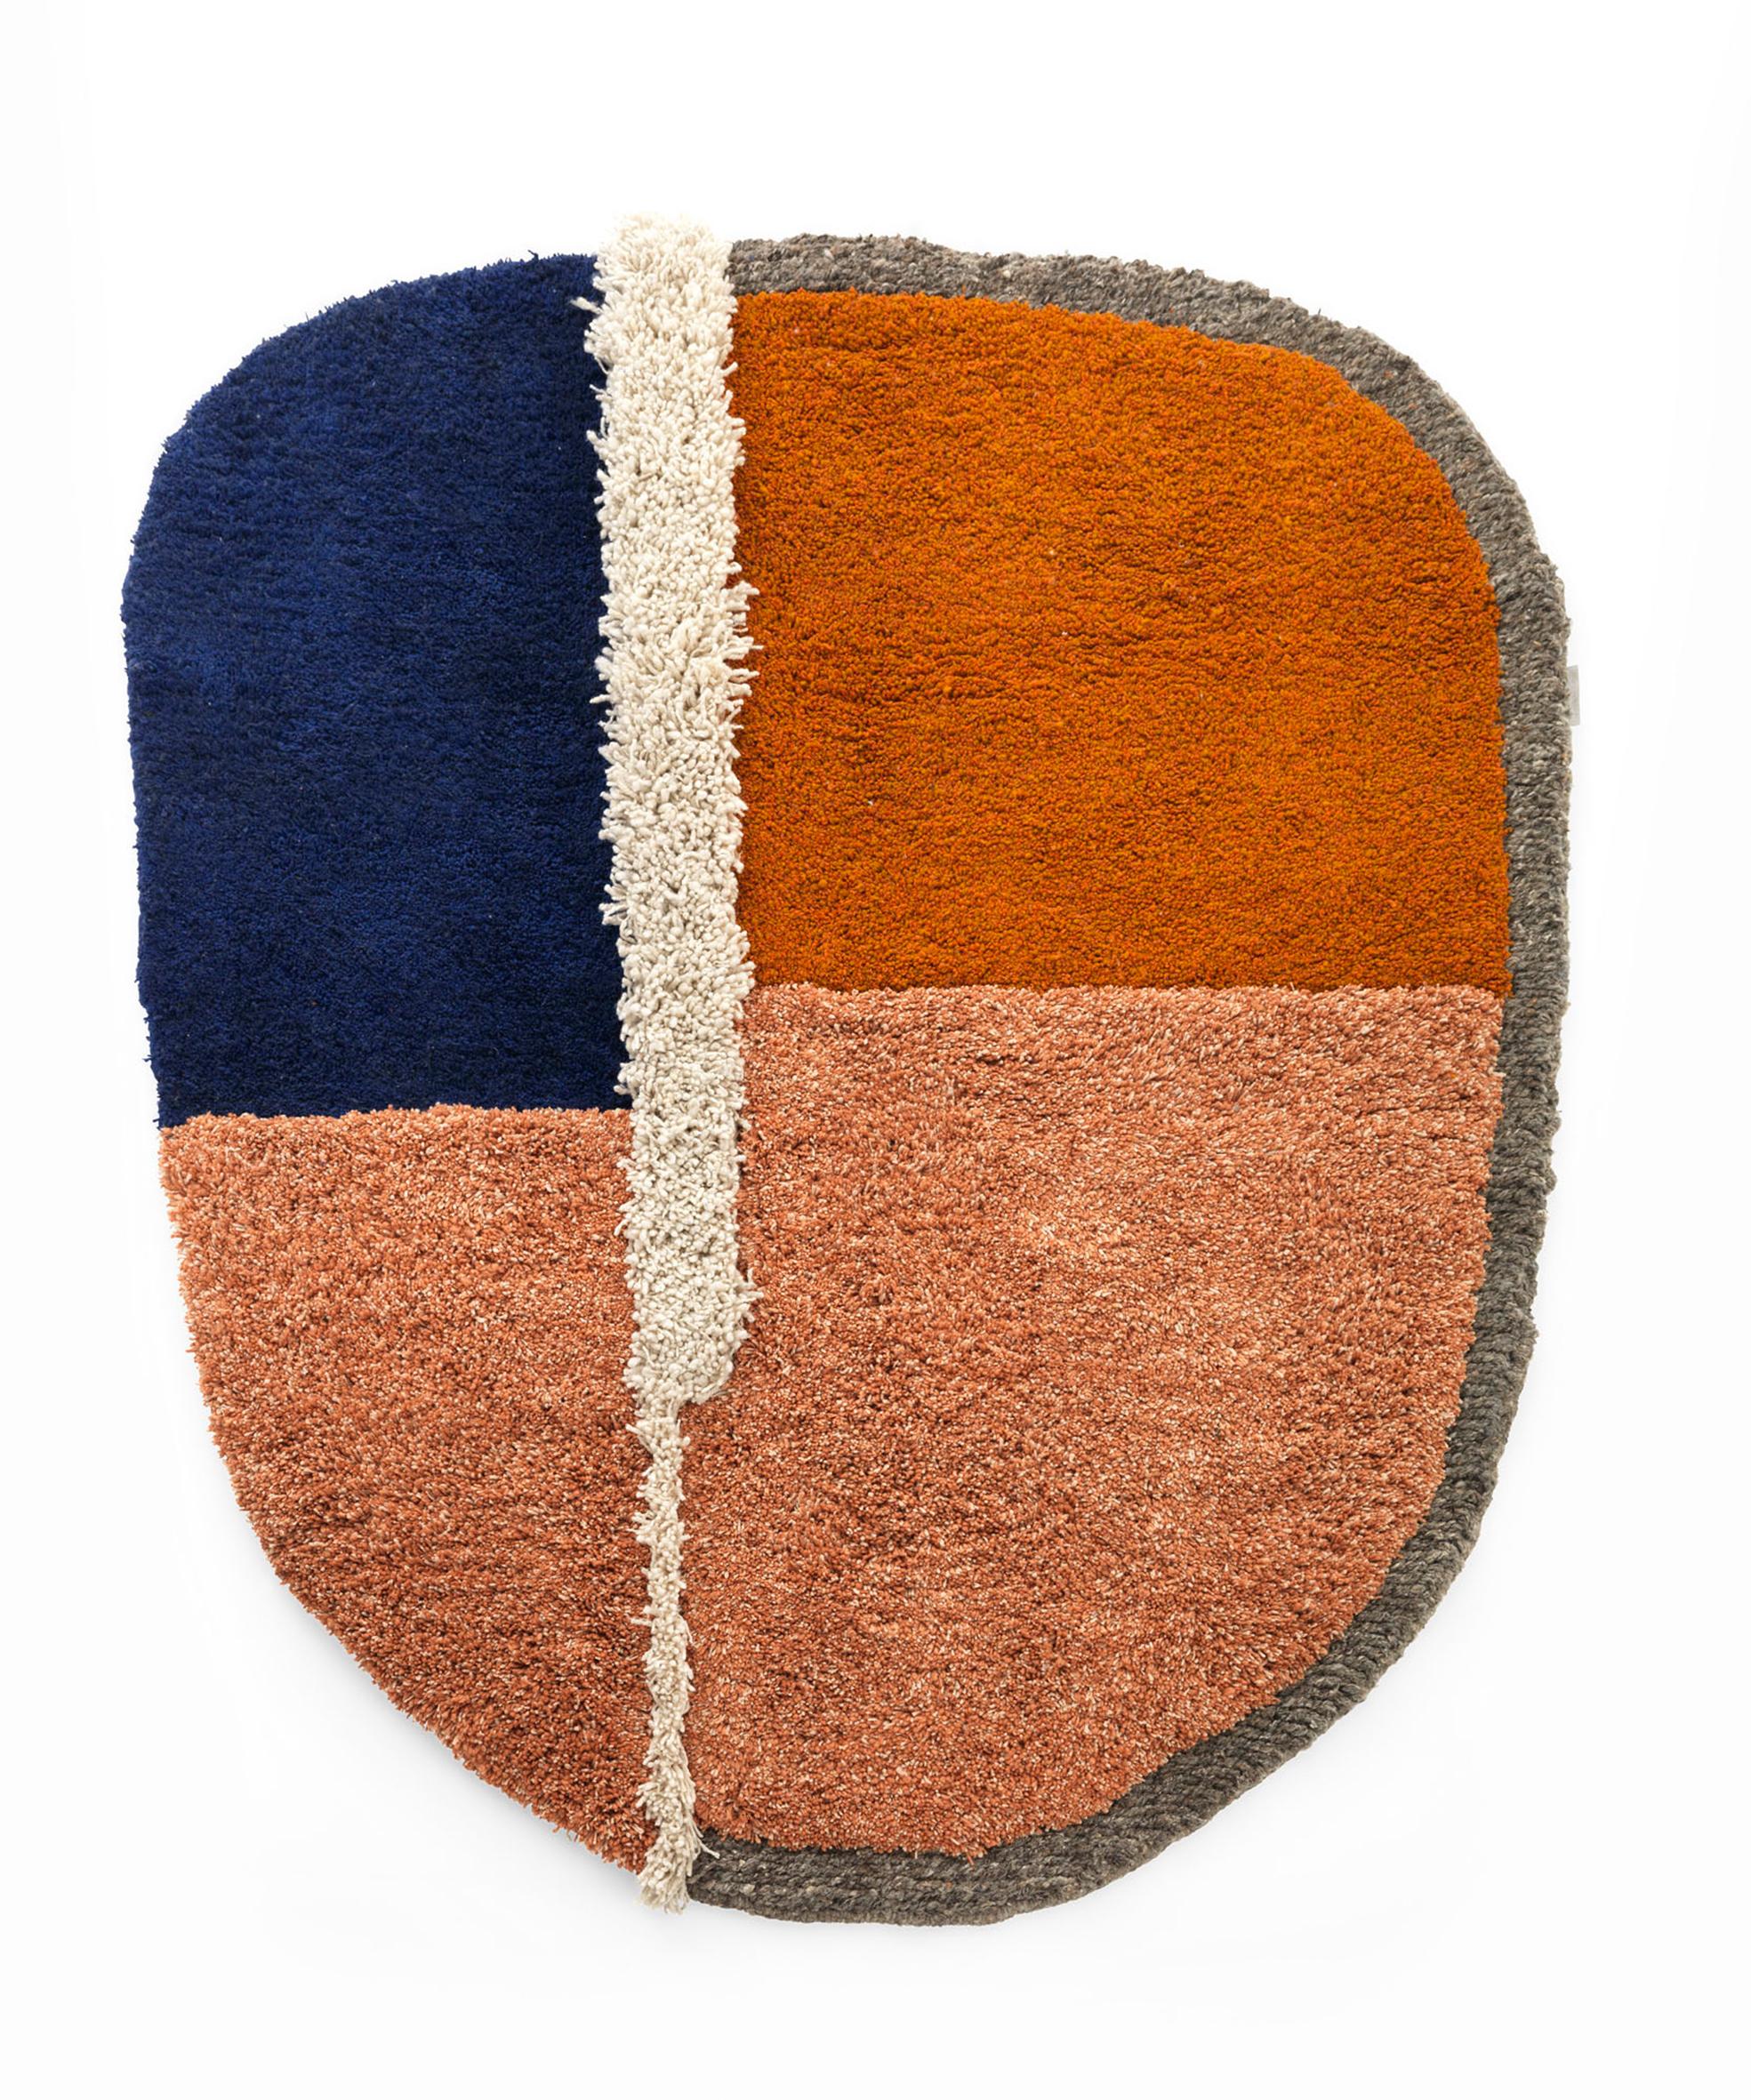 Großer Nudo-Teppich von Sebastian Herkner
MATERIALIEN: 100% natürliche Schurwolle. 
Technik: handgewebt in Kolumbien.
Abmessungen: B 180 x L 220 cm 
Erhältlich in den Farben: weiß/ beige/ rosa, grau/ grün/ schwarz, blau/ orange/ ocker, braun/